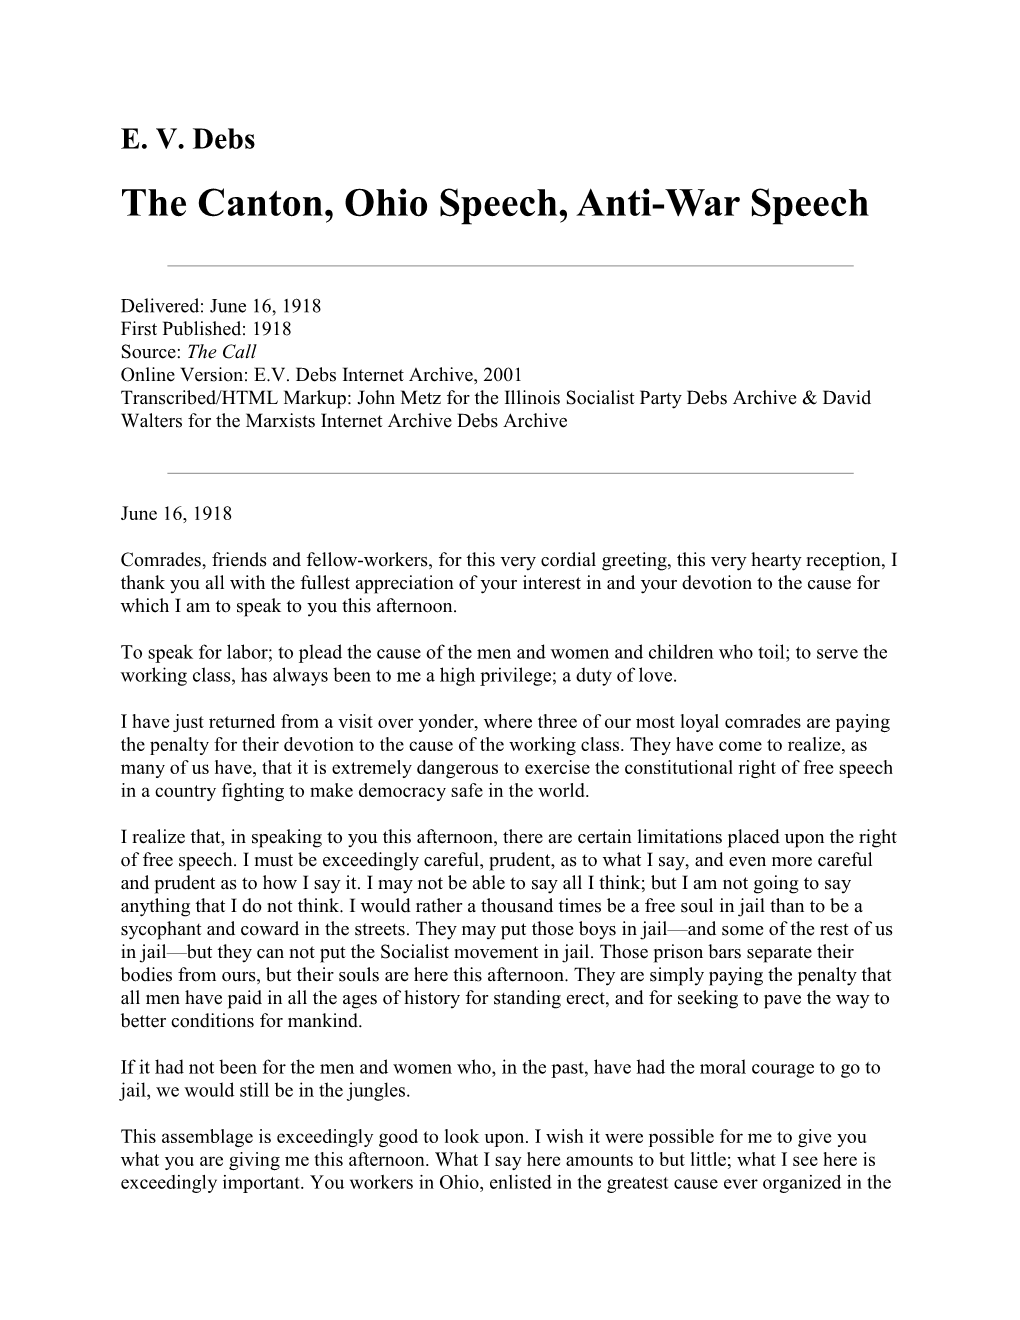 Anti-War Speech